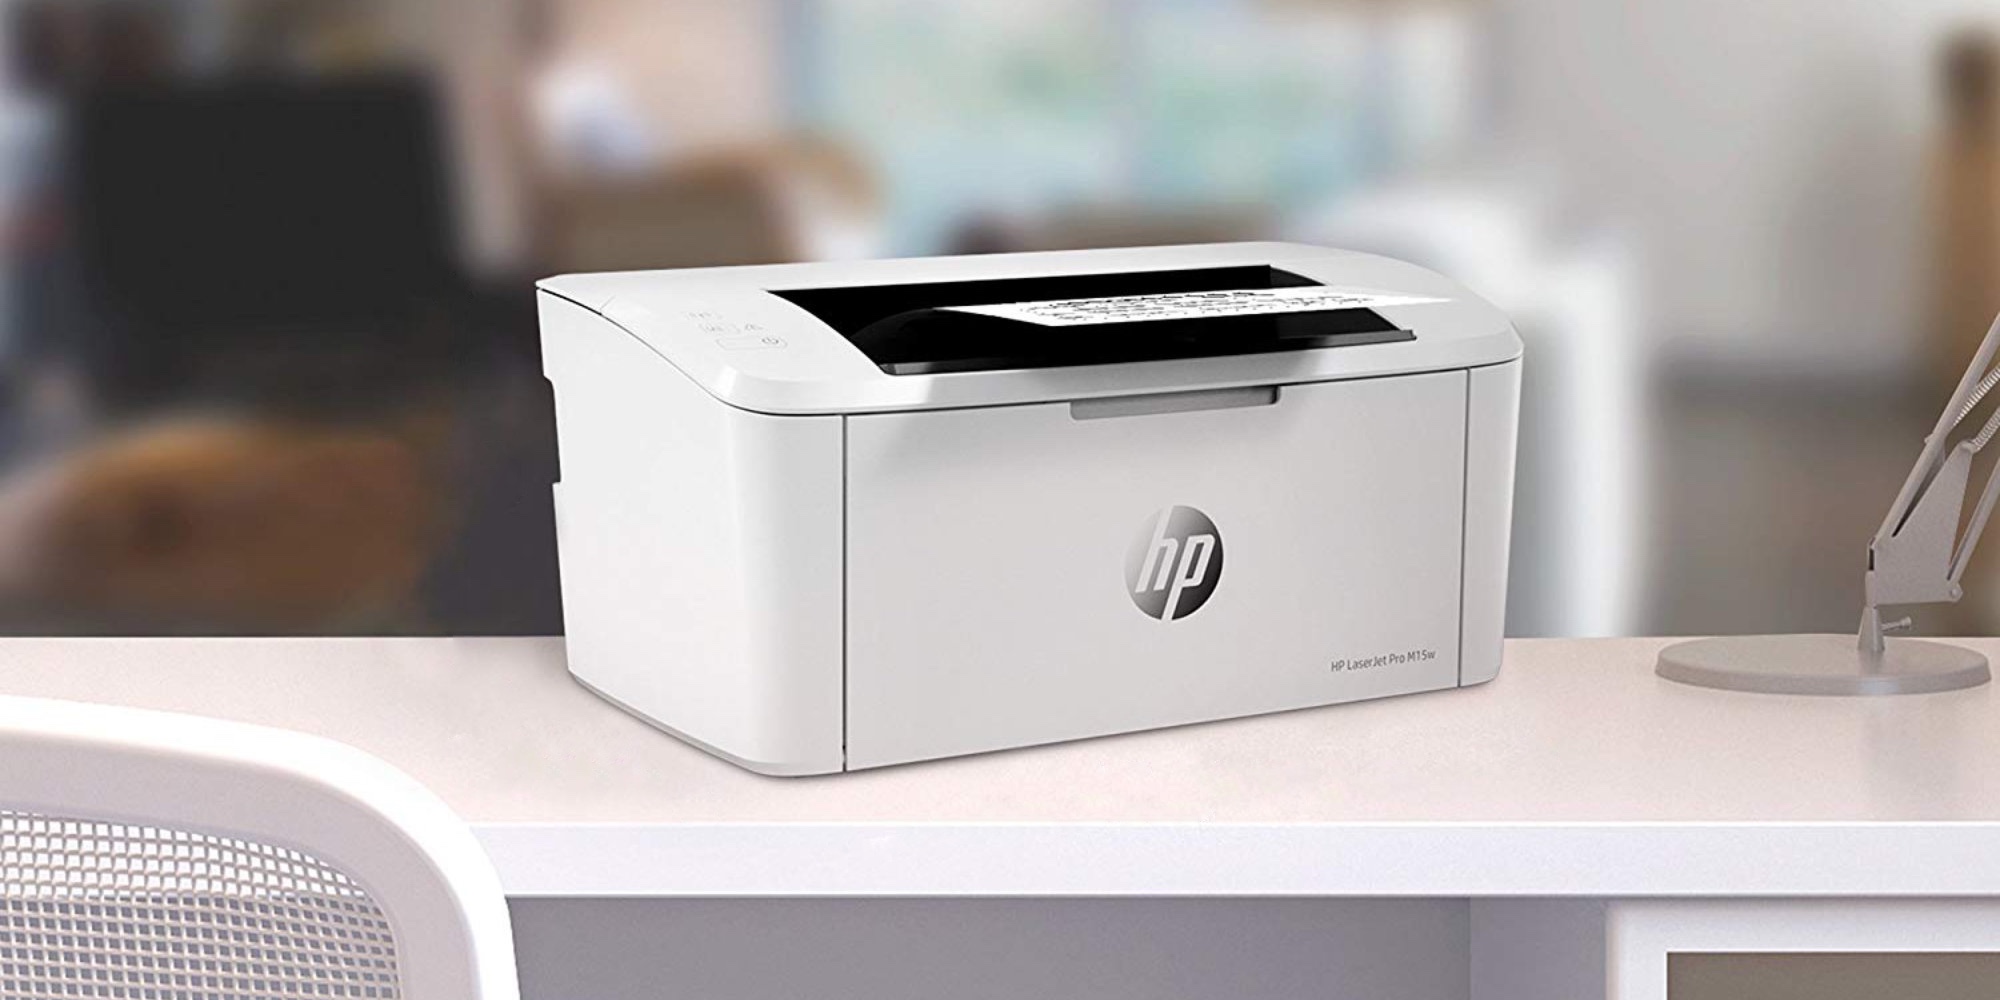 Bij elkaar passen Mammoet pack HP's LaserJet Pro Printer is compact and has AirPrint: $65 (All-time low)